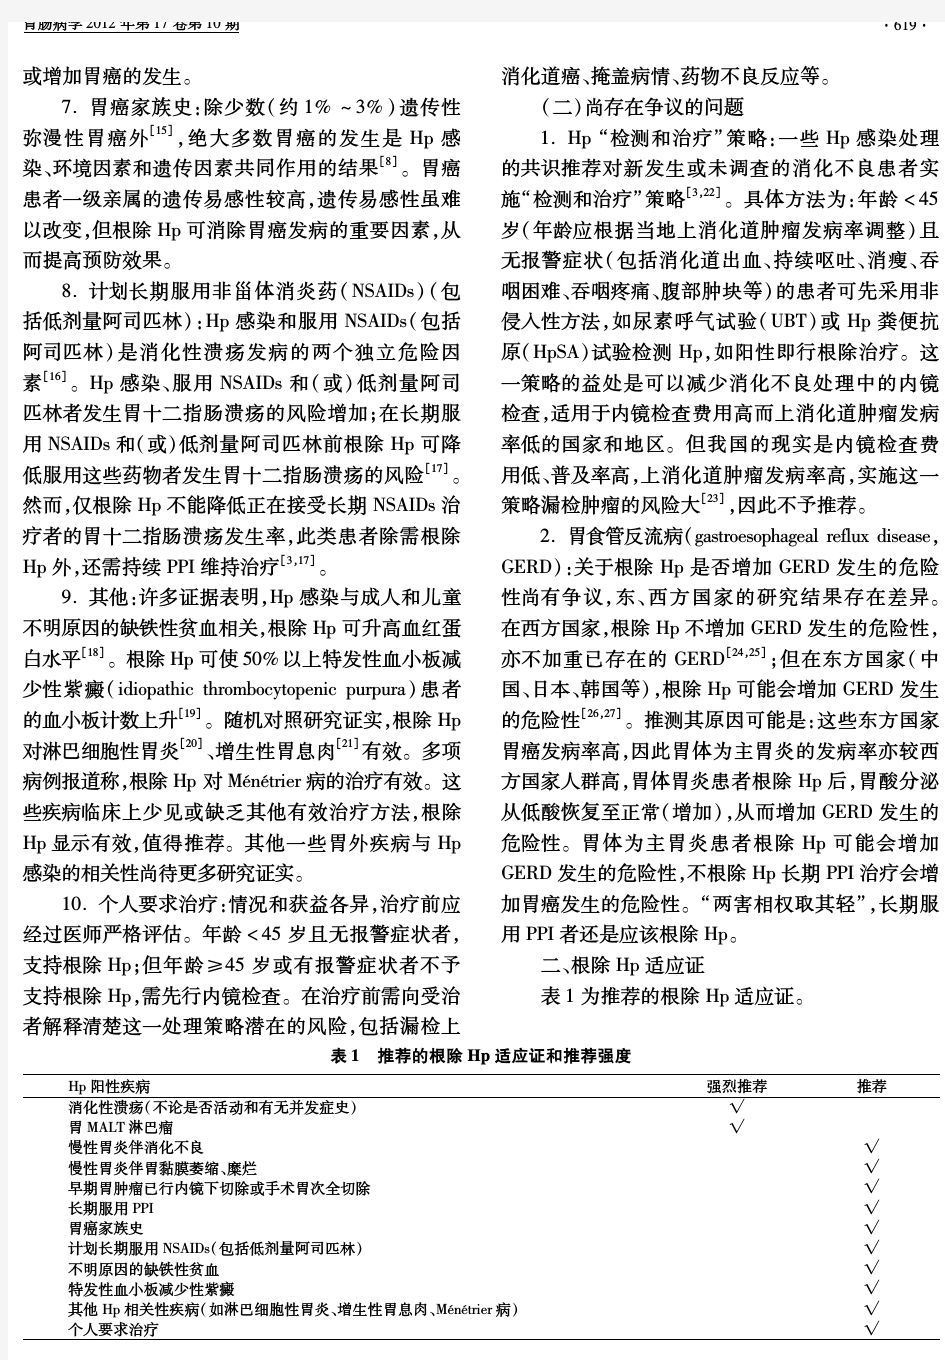 共识与指南_胃肠病2012-10-第四次全国幽门螺杆菌感染处理共识报告